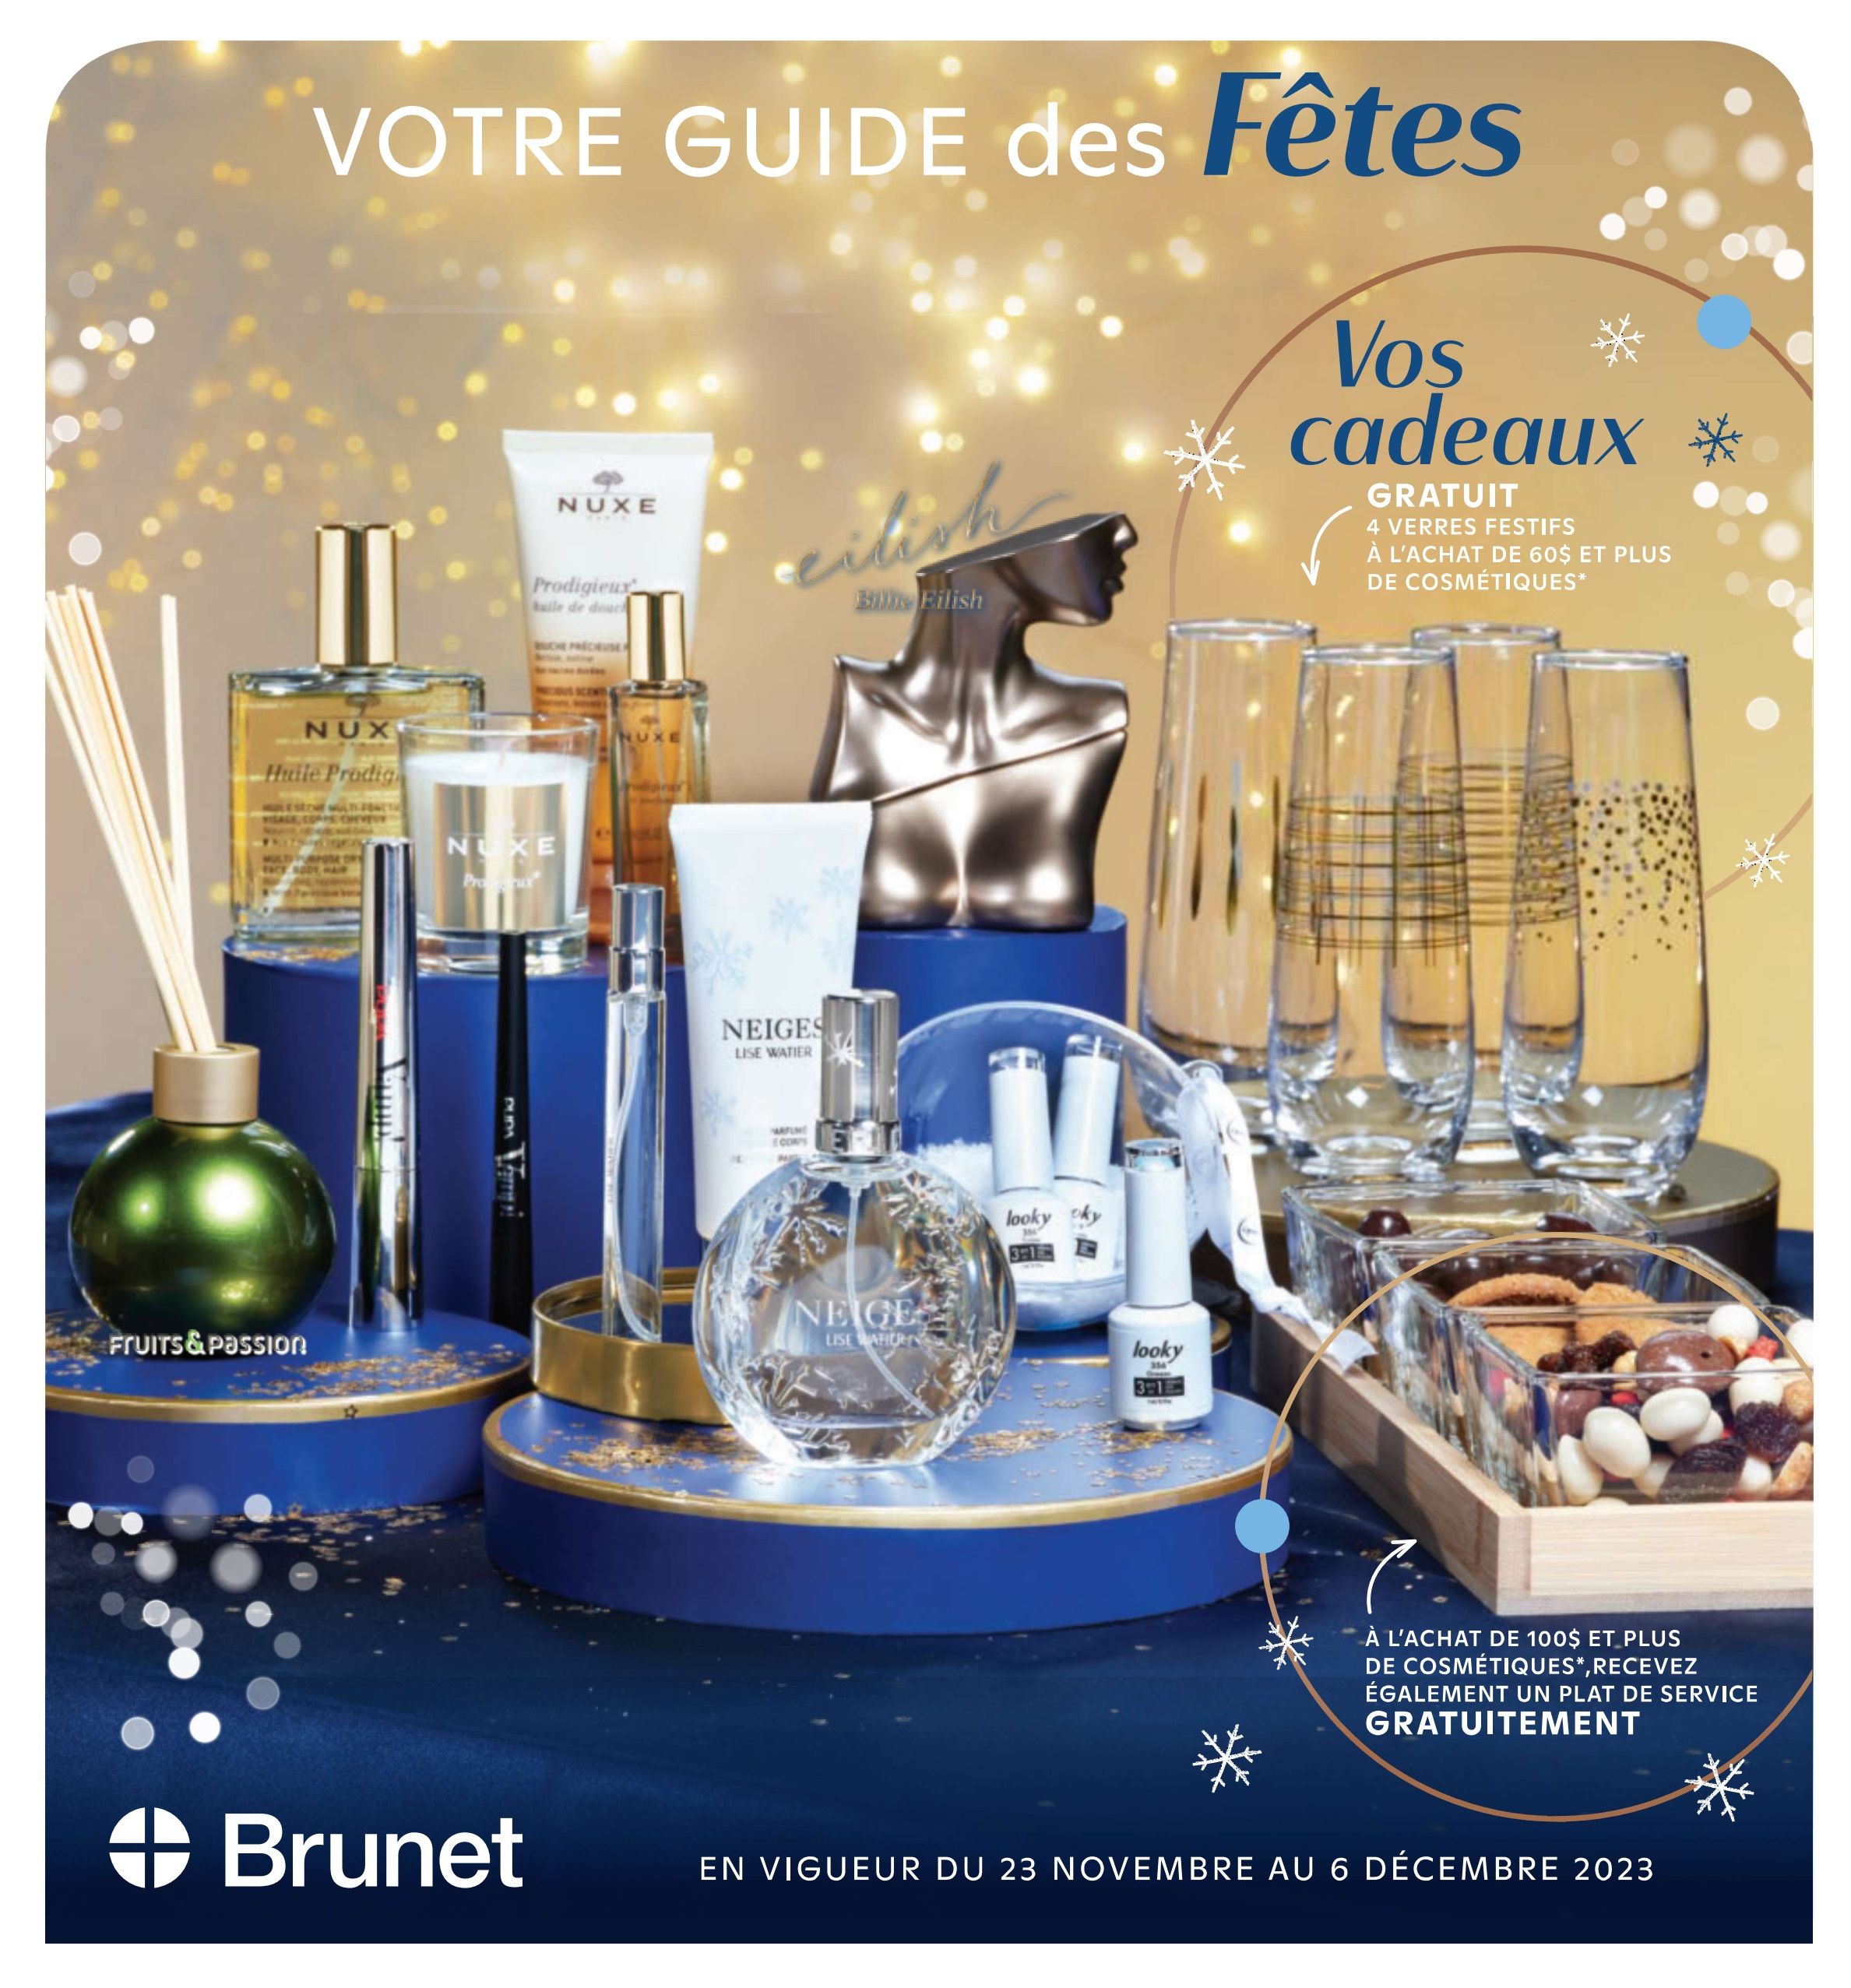 Circulaire Brunet - Guide des Fêtes - Page 1